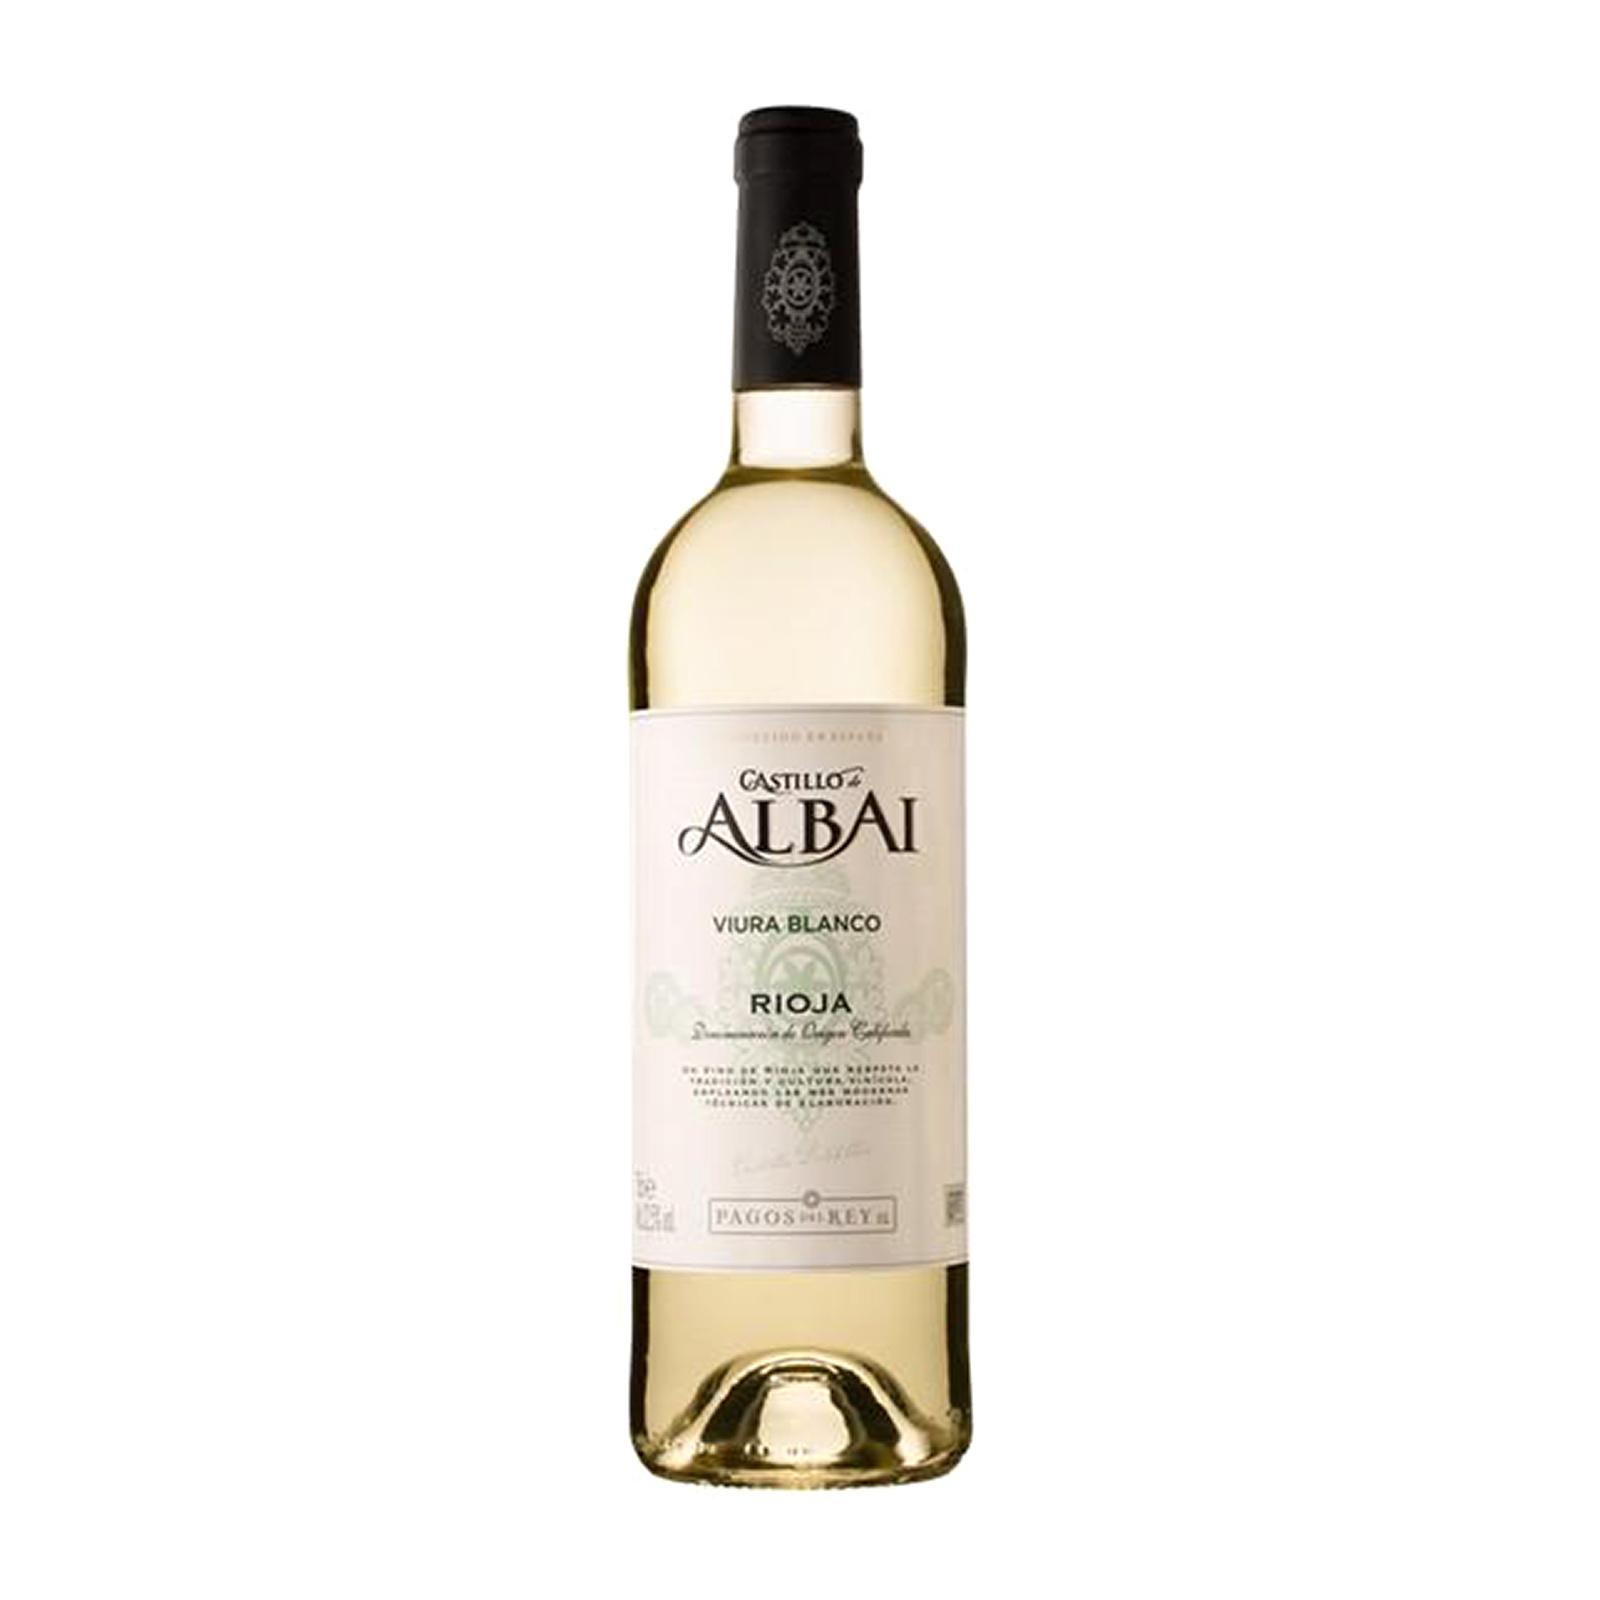 Castillo de Albai Viura Blanco 2018 White Wine – Rioja Spain